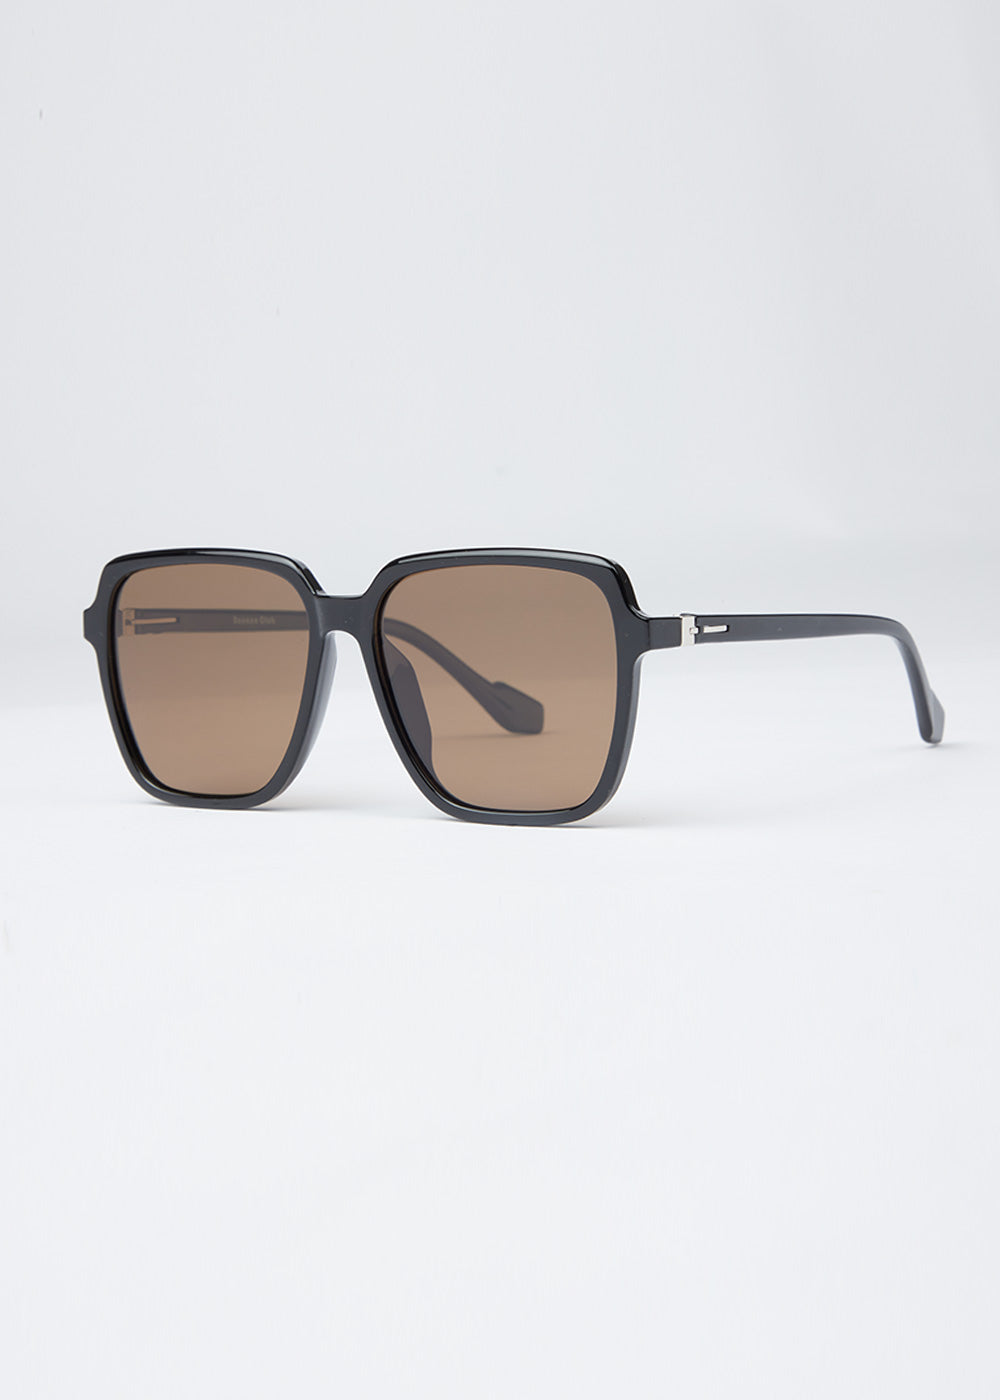 FlameTint Unisex Square Sunglasses